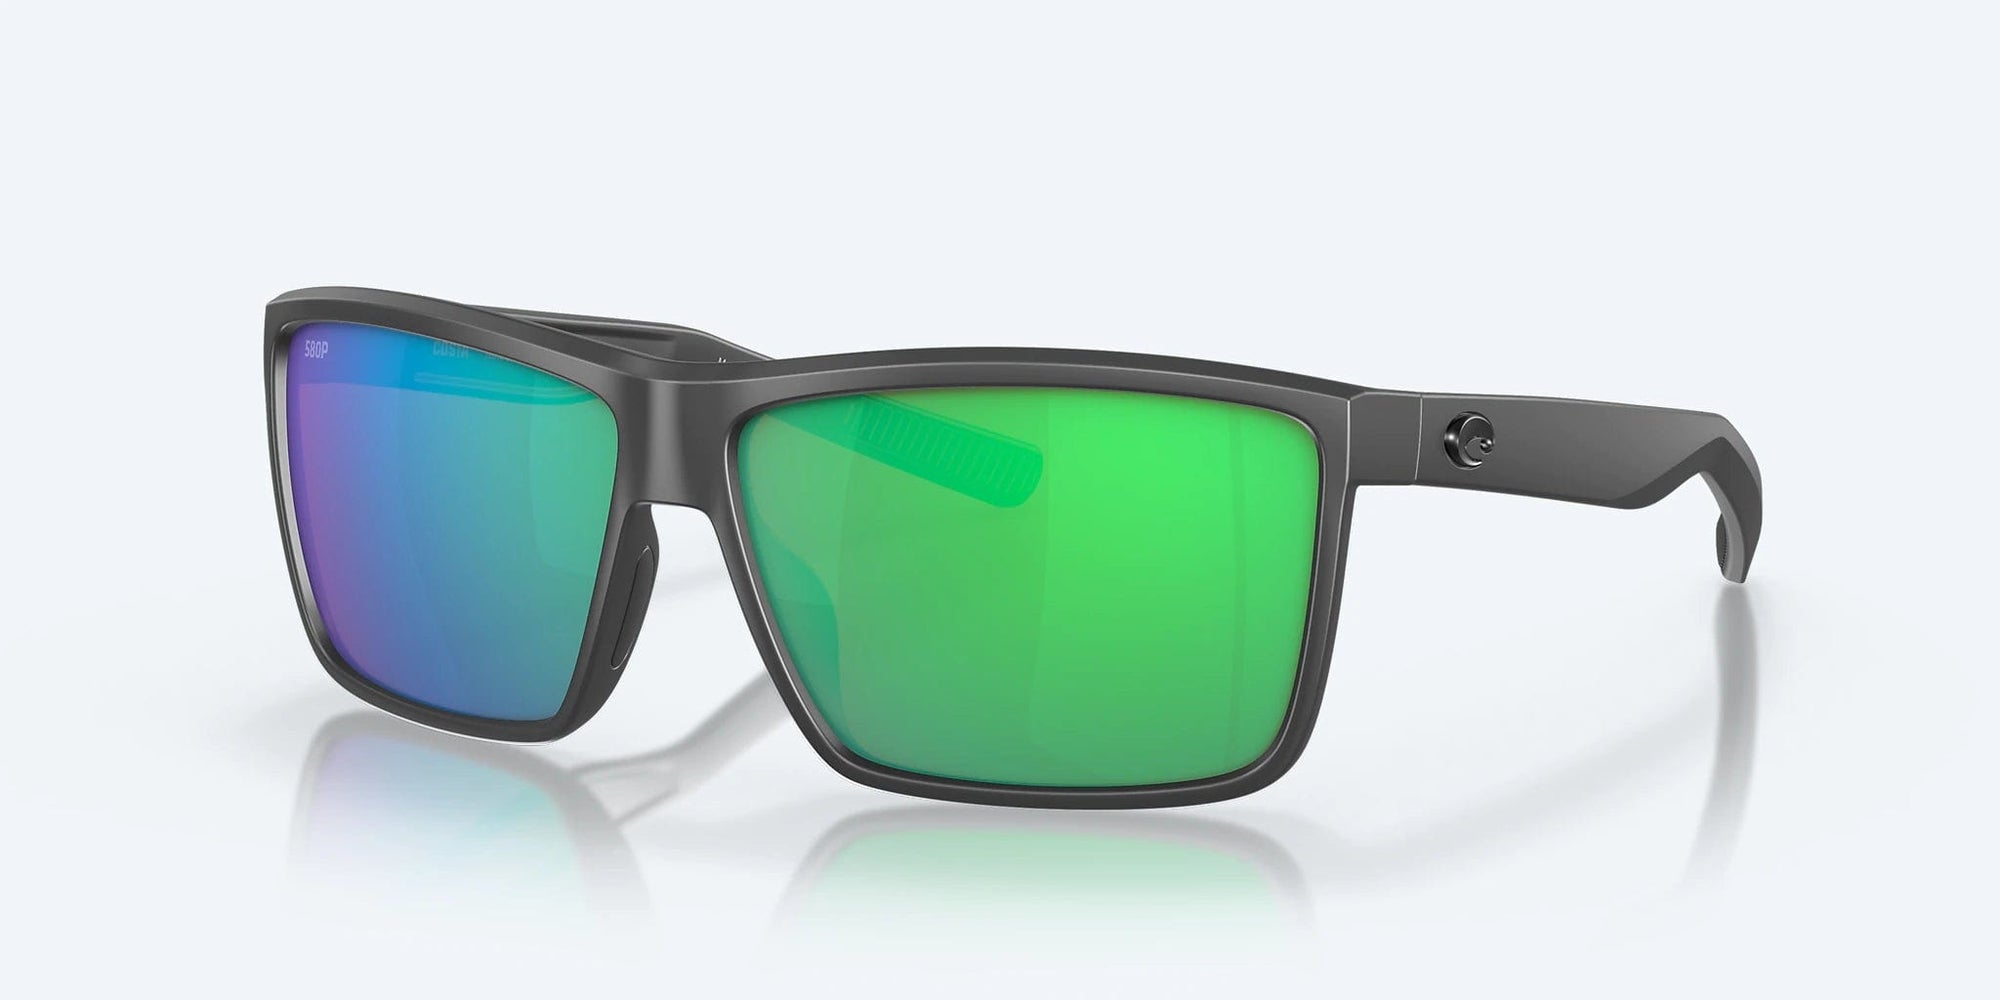 Costa Del Mar Rinconcito Polarized Sunglasses (580P - Polycarbonate Lenses) Matte Gray - Green Mirror  580P